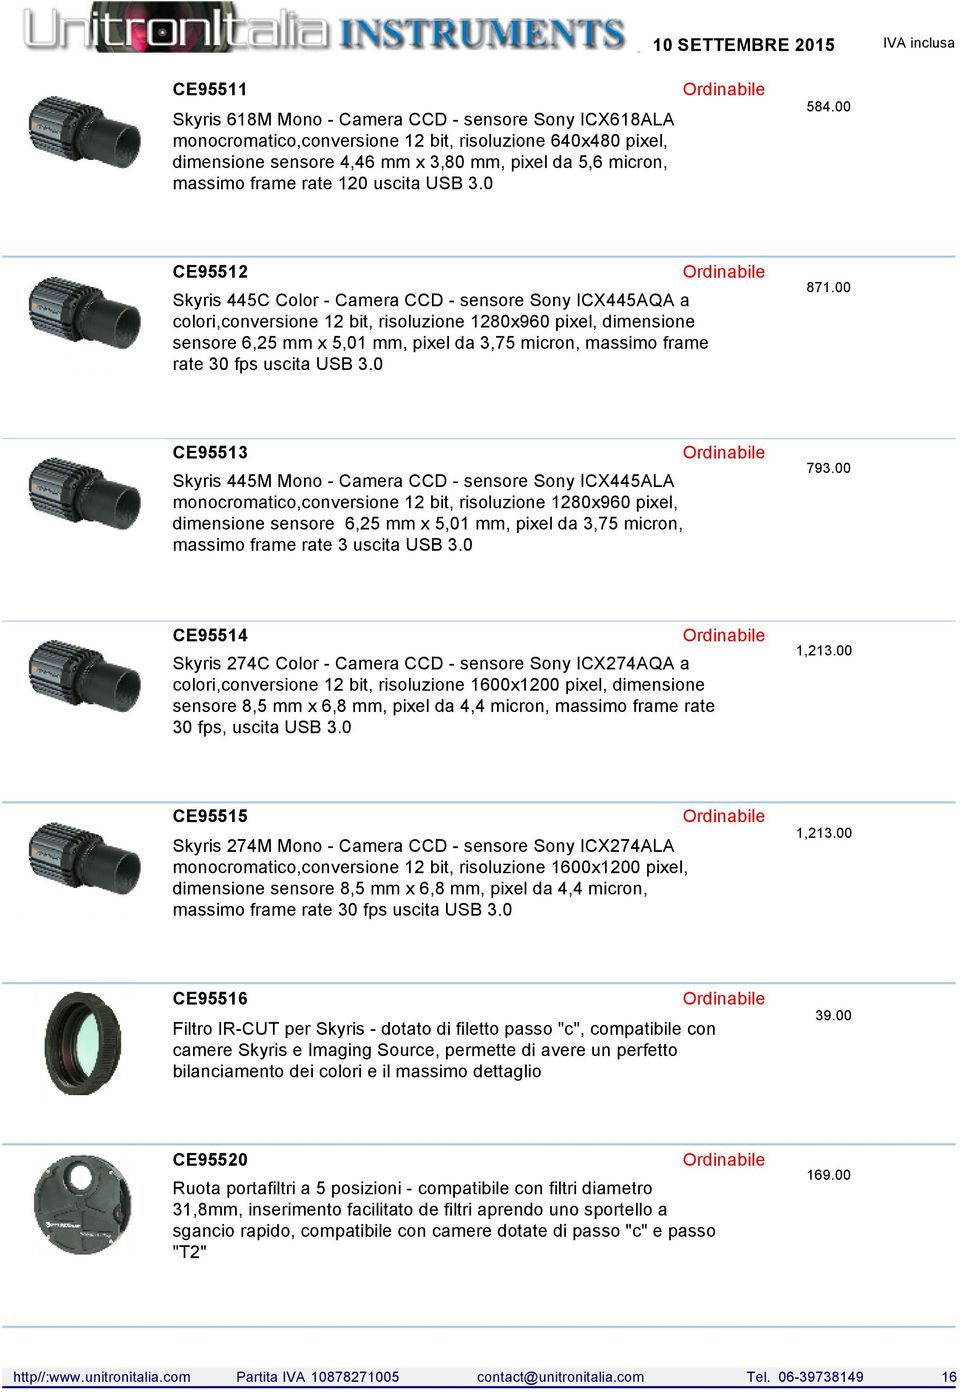 00 CE95512 Skyris 445C Color - Camera CCD - sensore Sony ICX445AQA a colori,conversione 12 bit, risoluzione 1280x960 pixel, dimensione sensore 6,25 mm x 5,01 mm, pixel da 3,75 micron, massimo frame